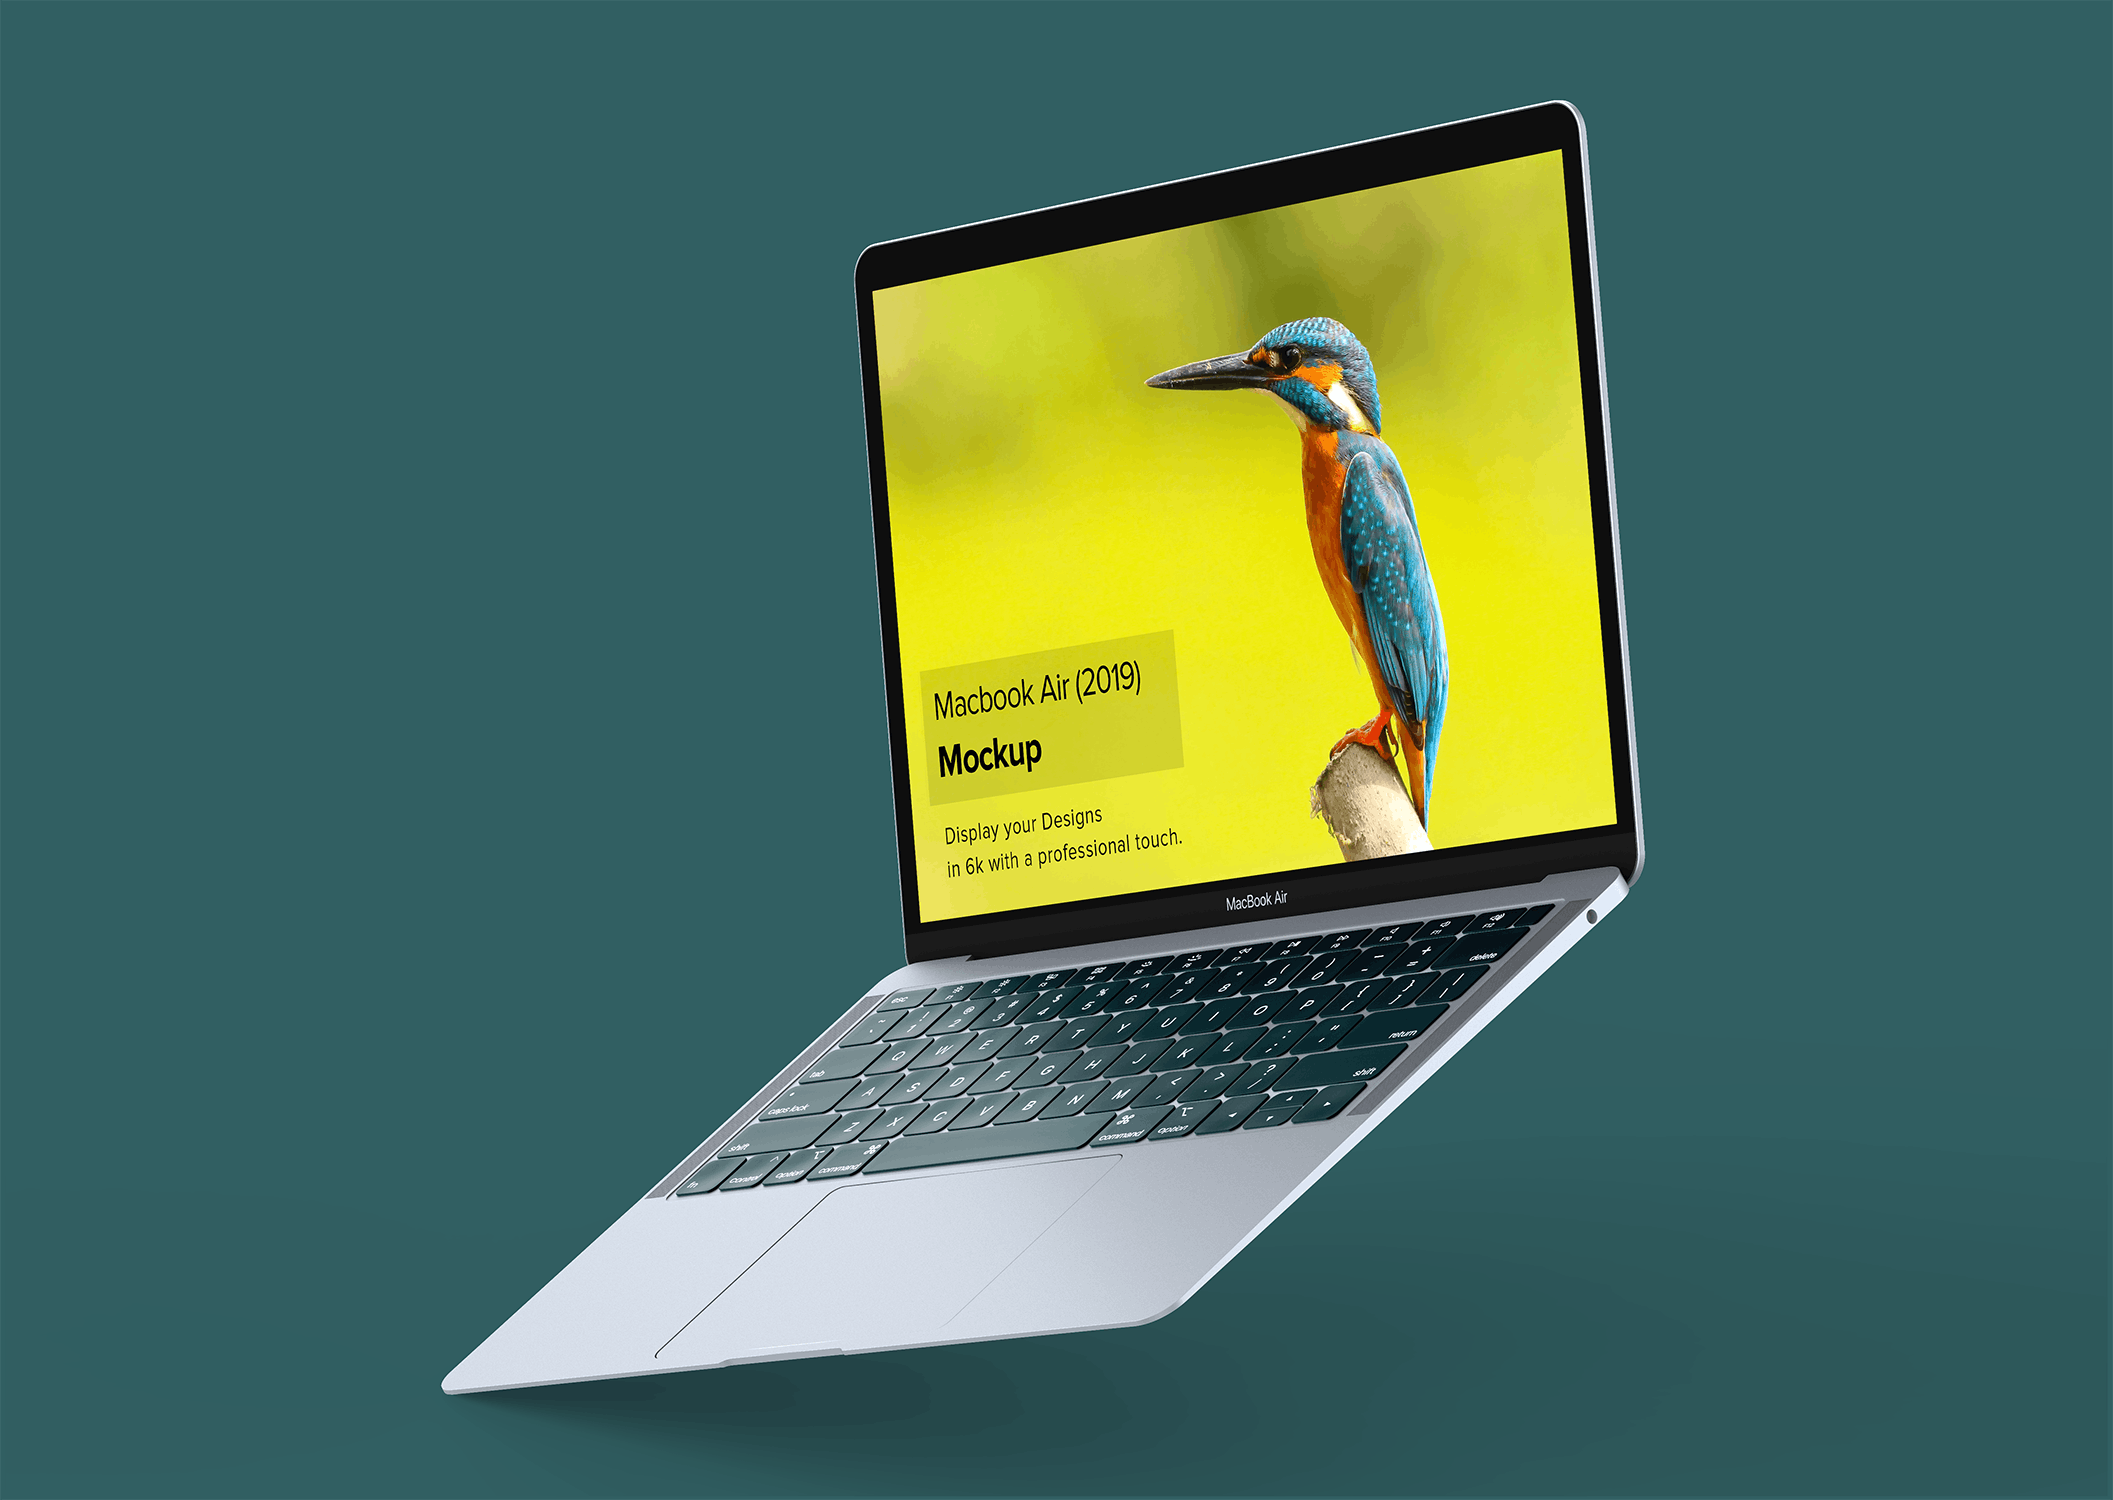 4K高清分辨率苹果超极本电脑MacBook Air样机 Macbook Air Mockup插图(4)